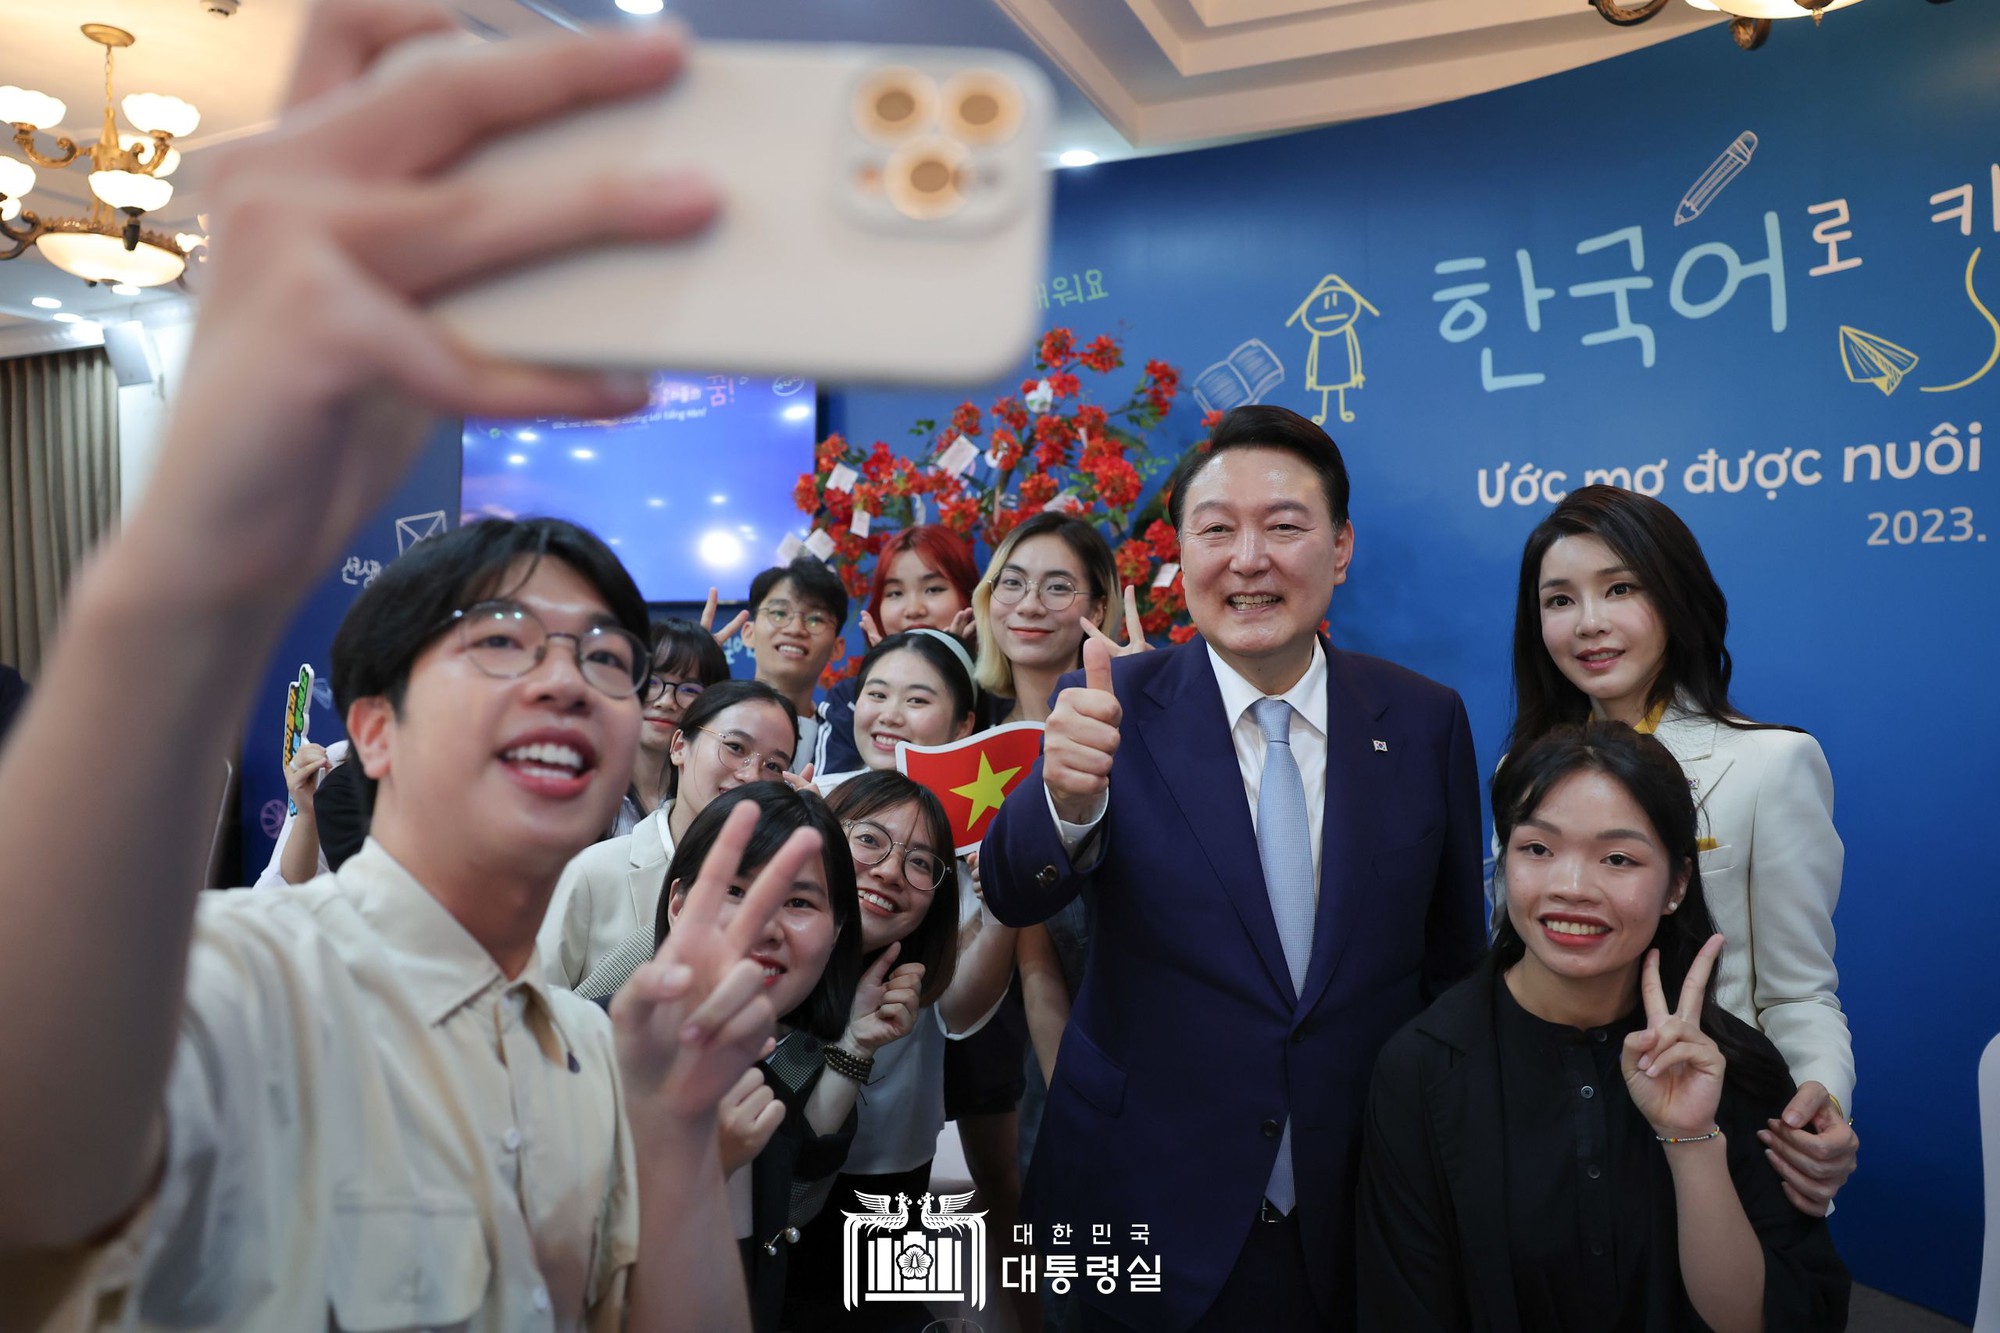 Tổng thống Hàn Quốc giao lưu cùng sinh viên Việt Nam và gặp gỡ HLV Park Hang-seo